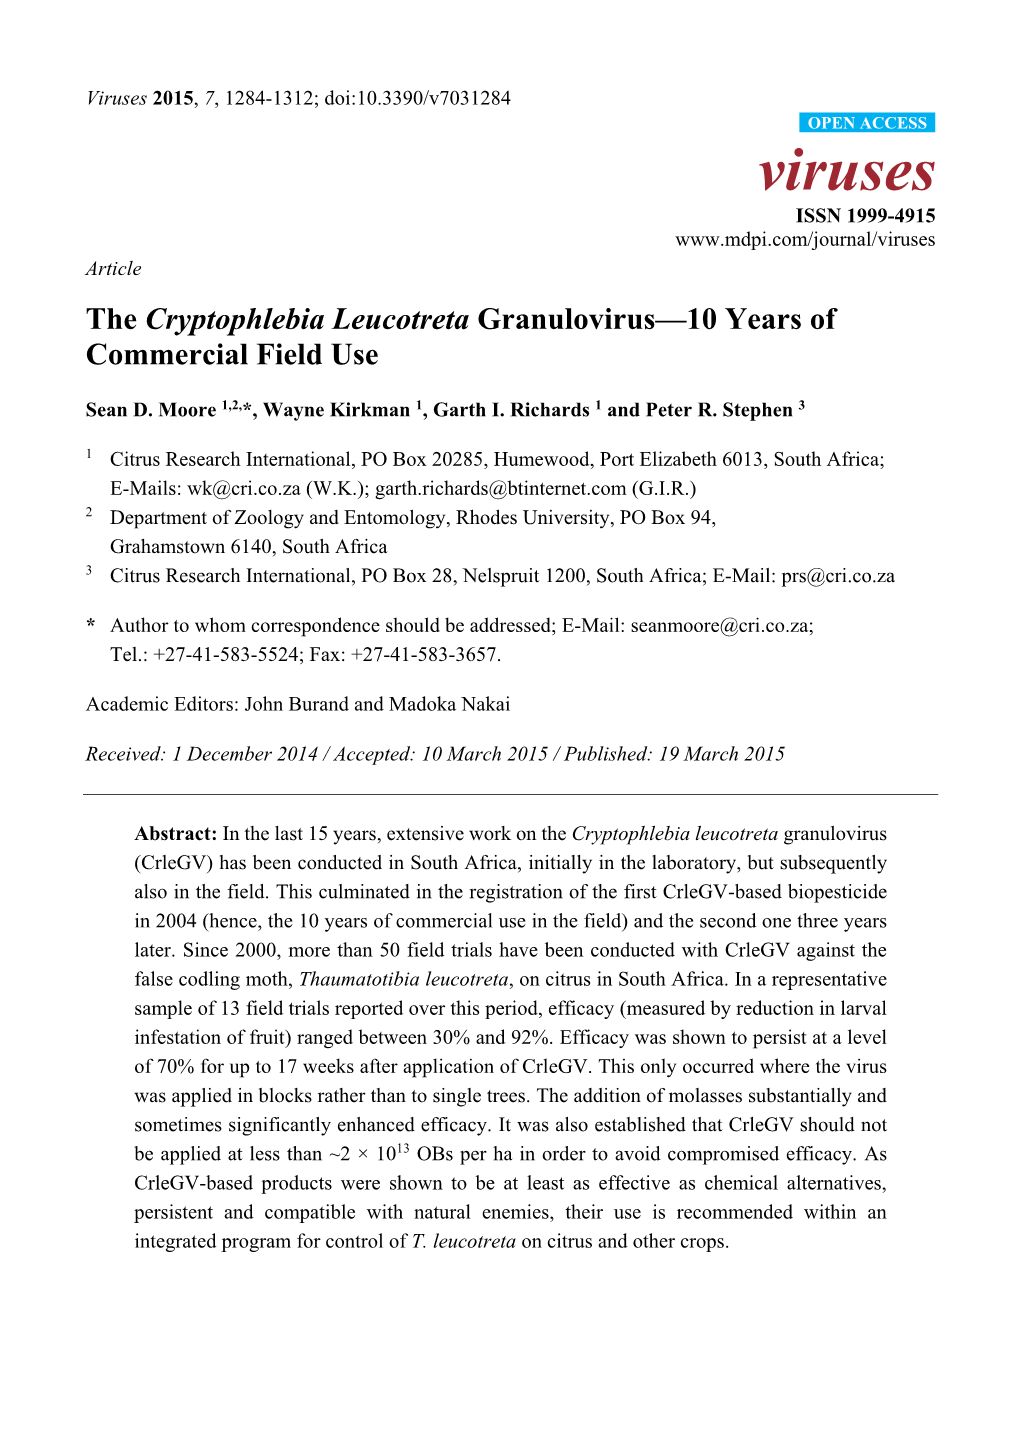 The Cryptophlebia Leucotreta Granulovirus—10 Years of Commercial Field Use